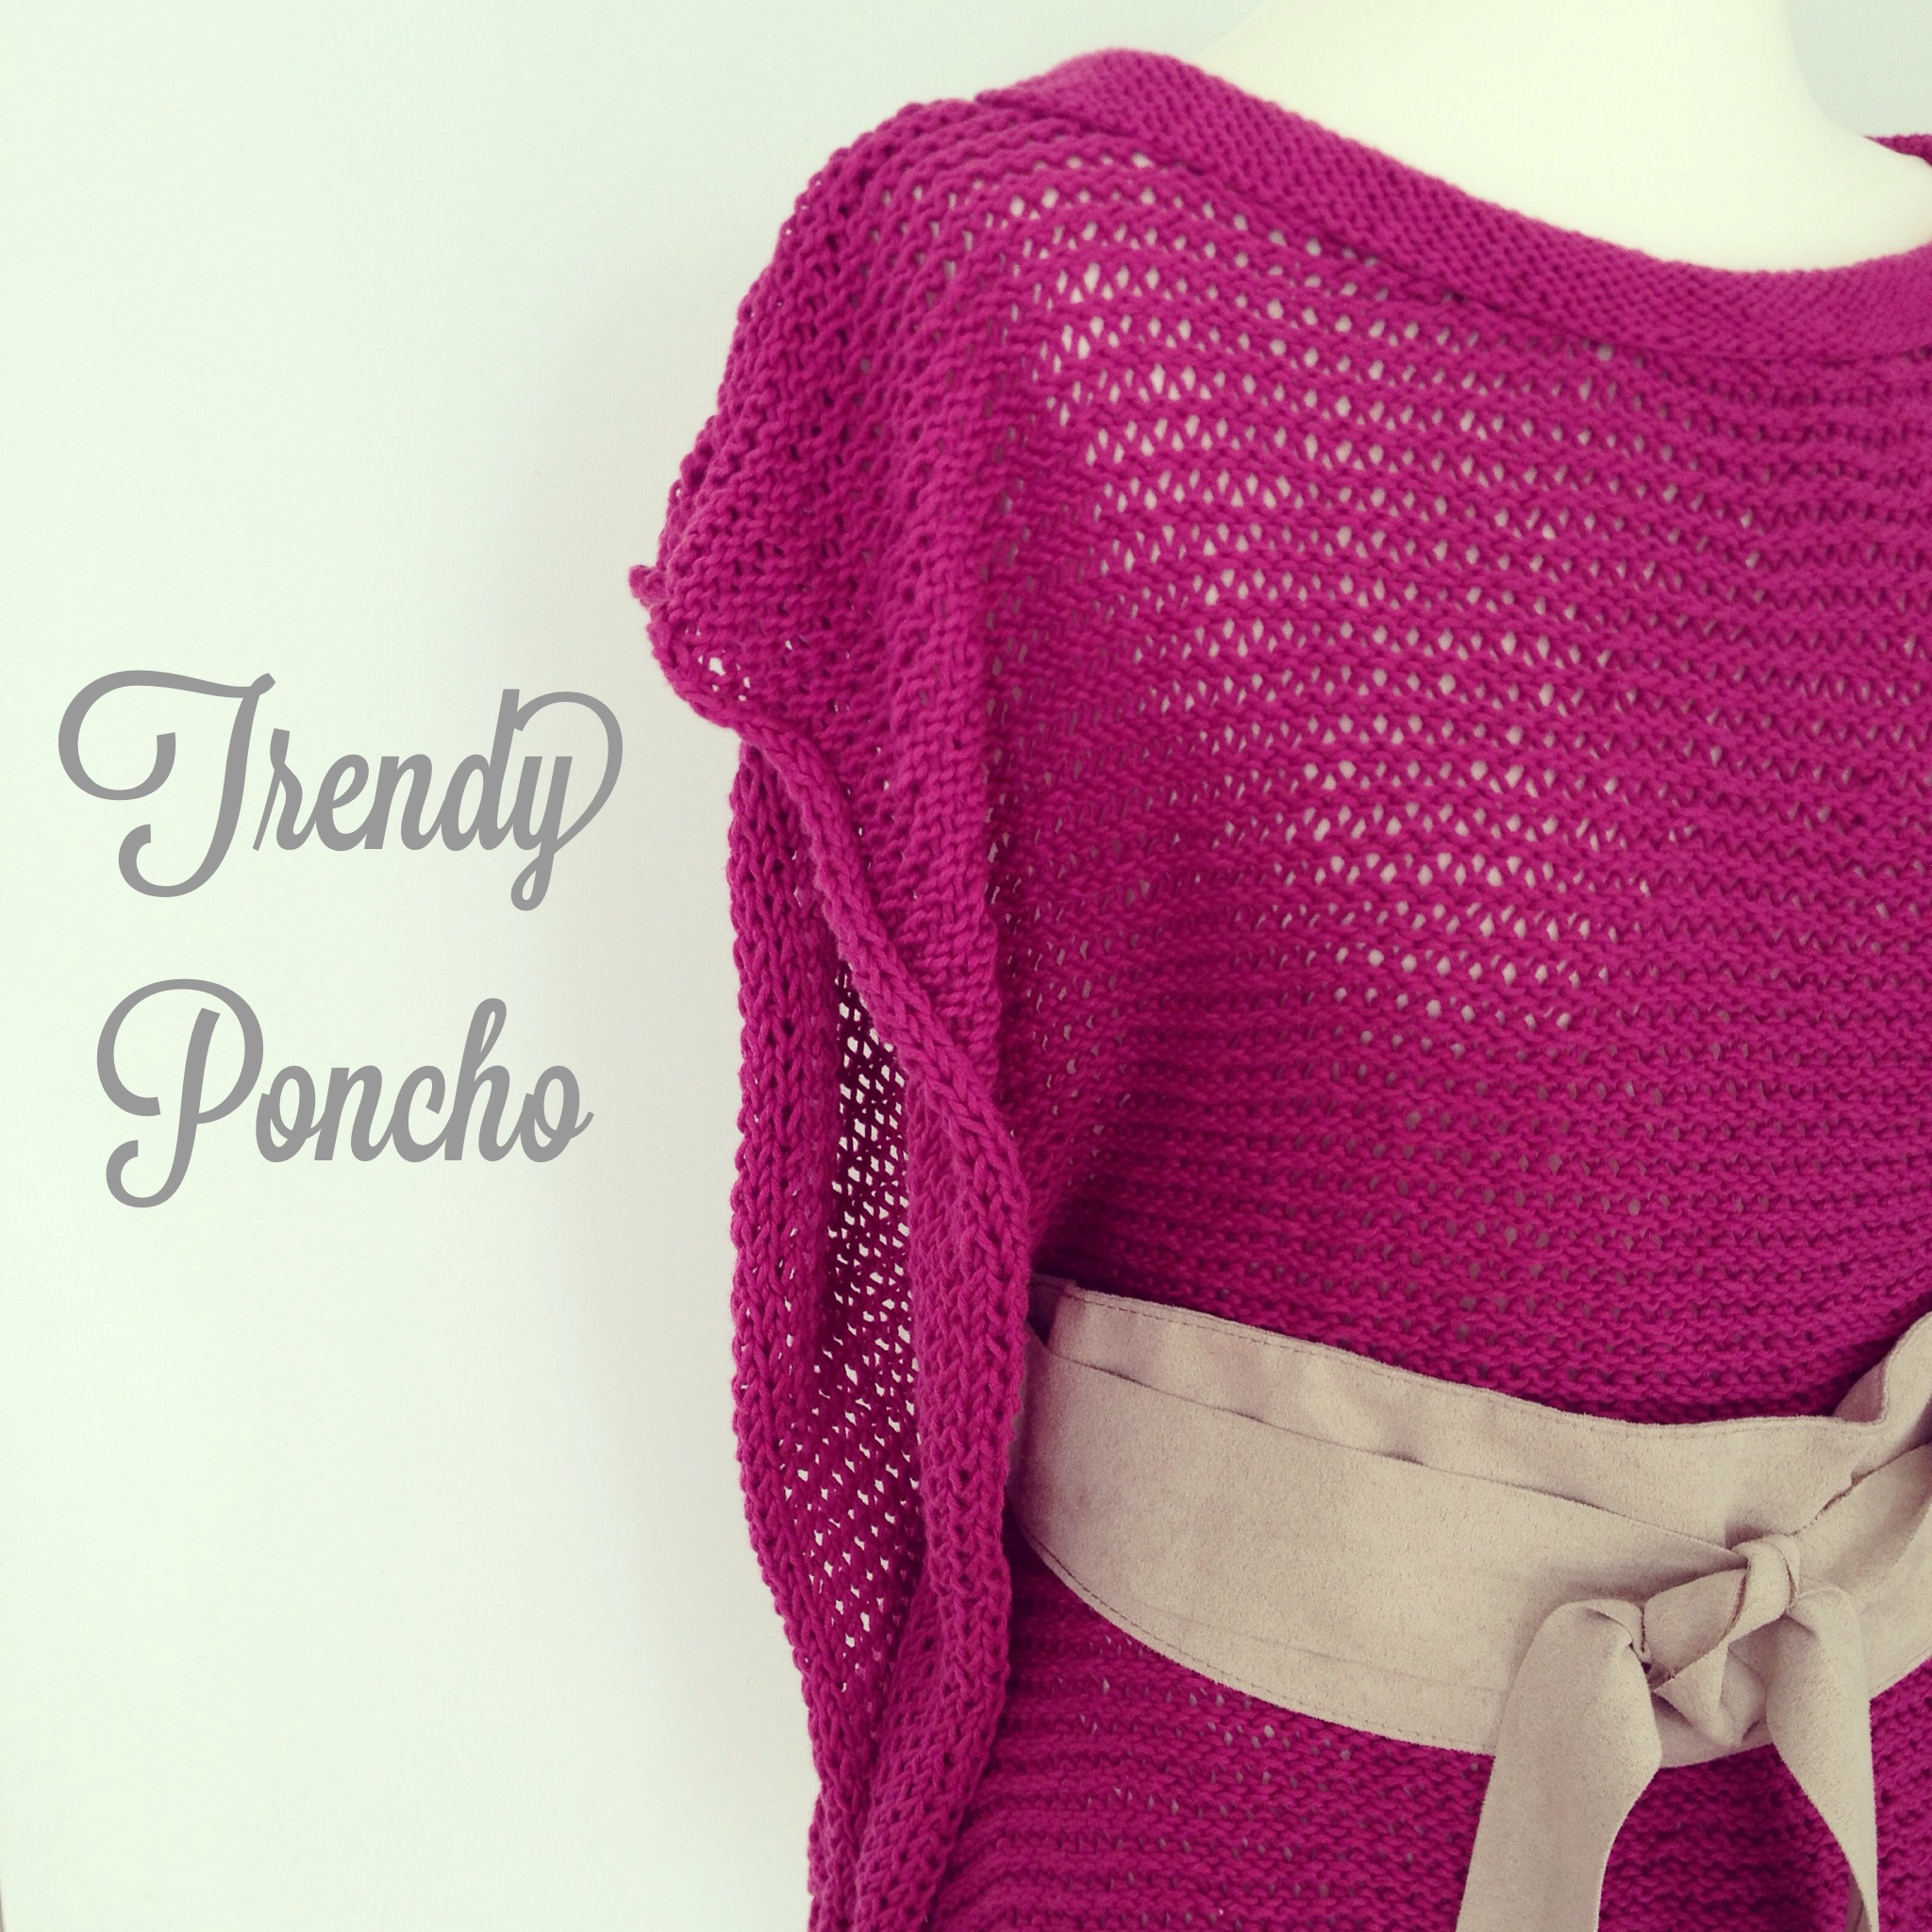 Trendy poncho